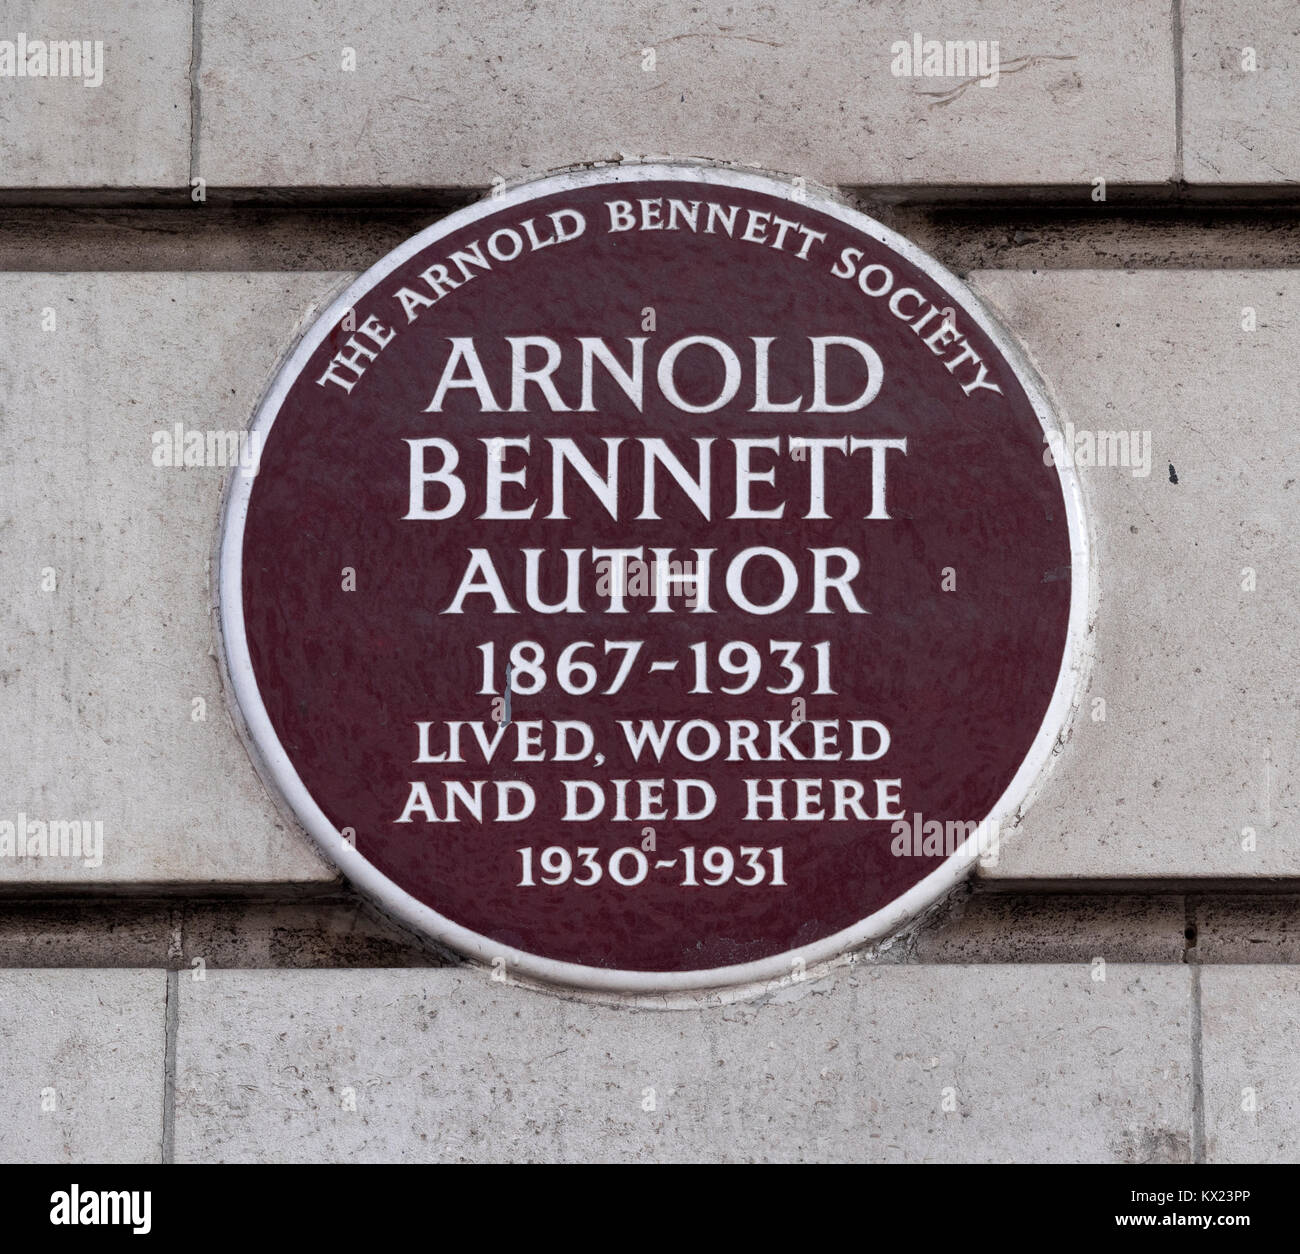 Brown à plaques du patrimoine Cour de Chiltern, Baker Street, Londres à la commémoration qu'Arnold Bennett auteur qui a vécu, travaillé et y mourut. 1930-1931 Banque D'Images